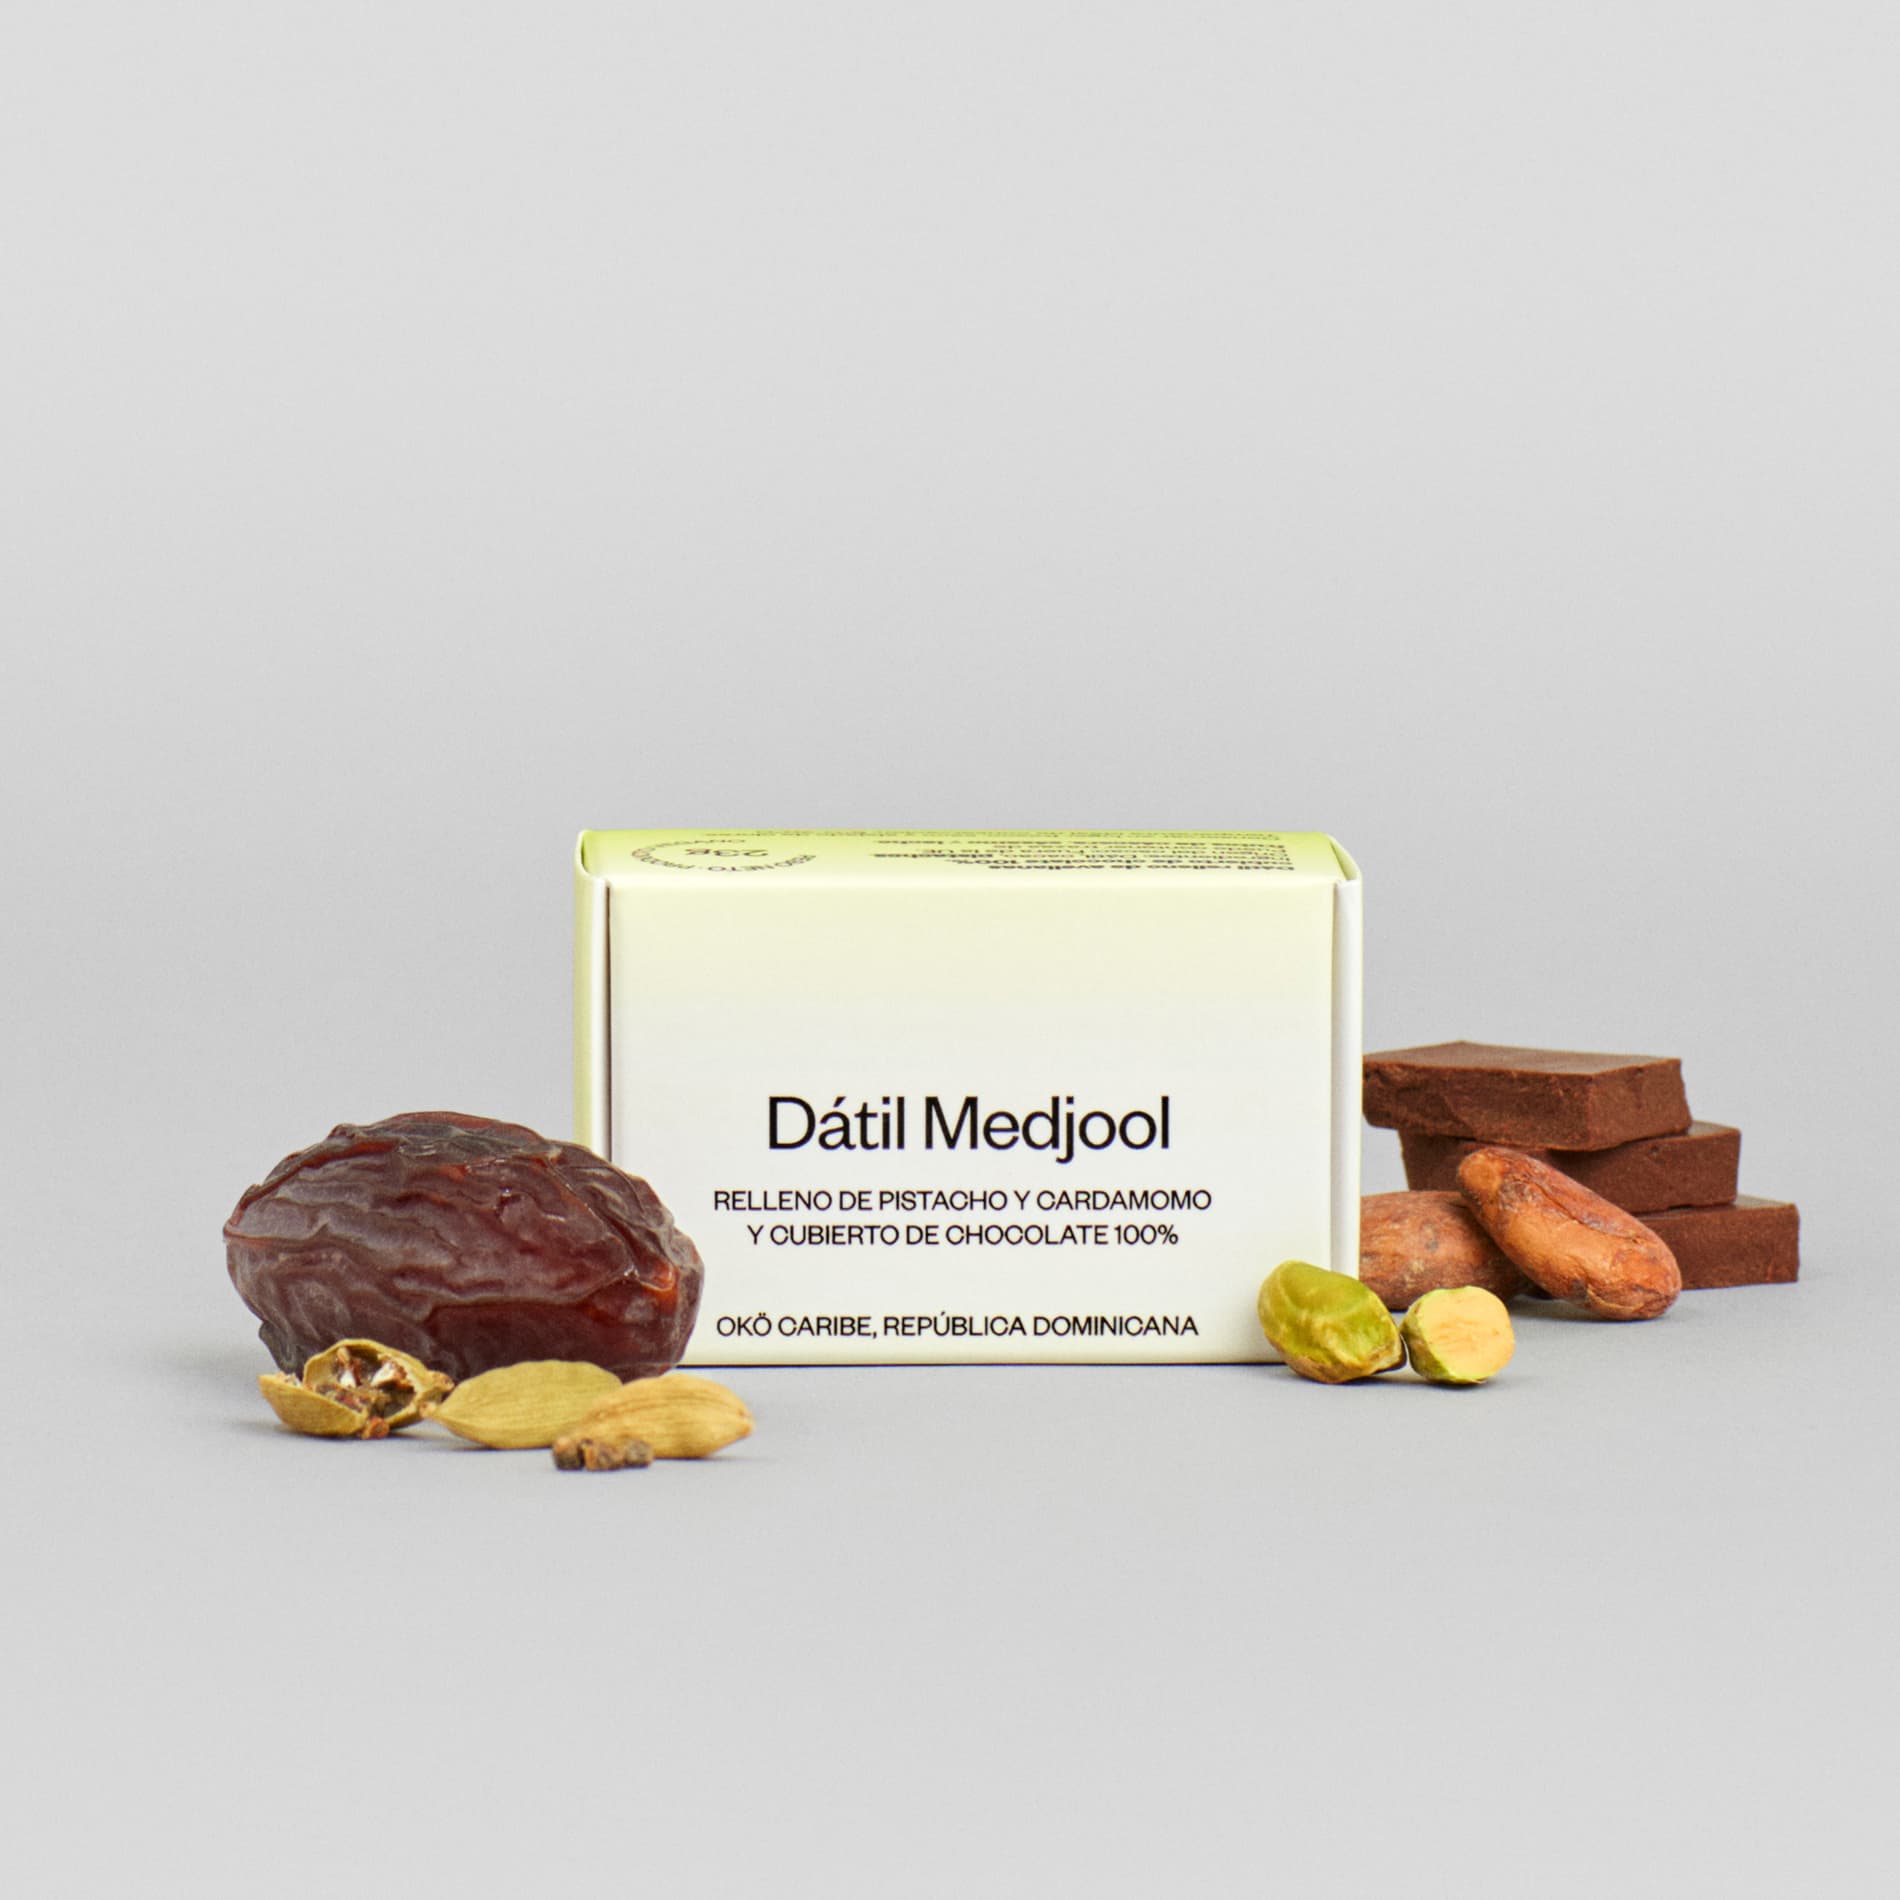 Dátil Medjool relleno de pistacho y cardamomo y recubierto de chocolate 100%